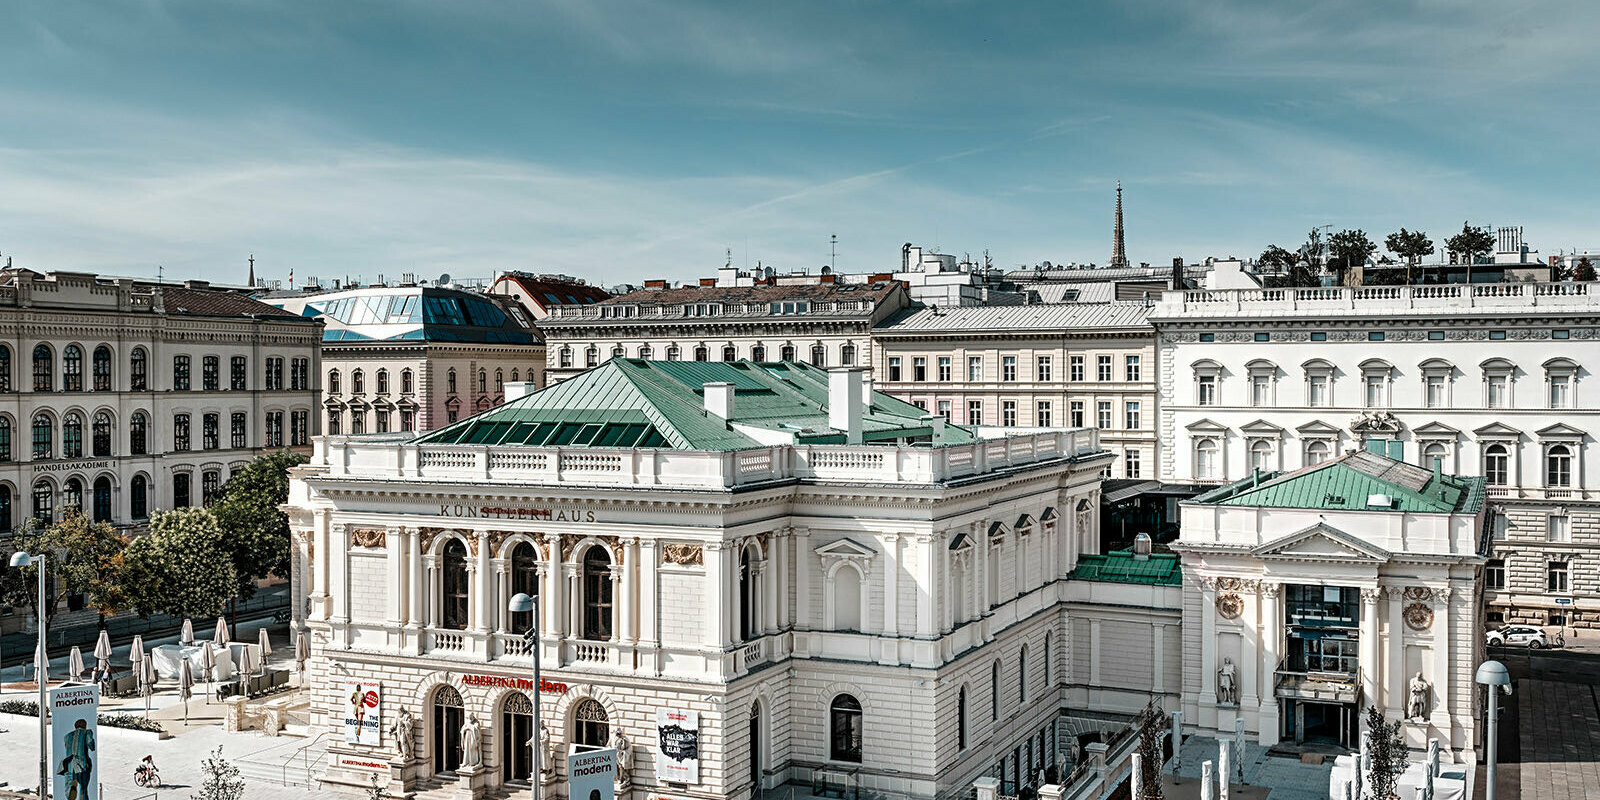 Es ist das Künstlerhaus in Wien zu sehen, umgeben von anderen Gebäuden.